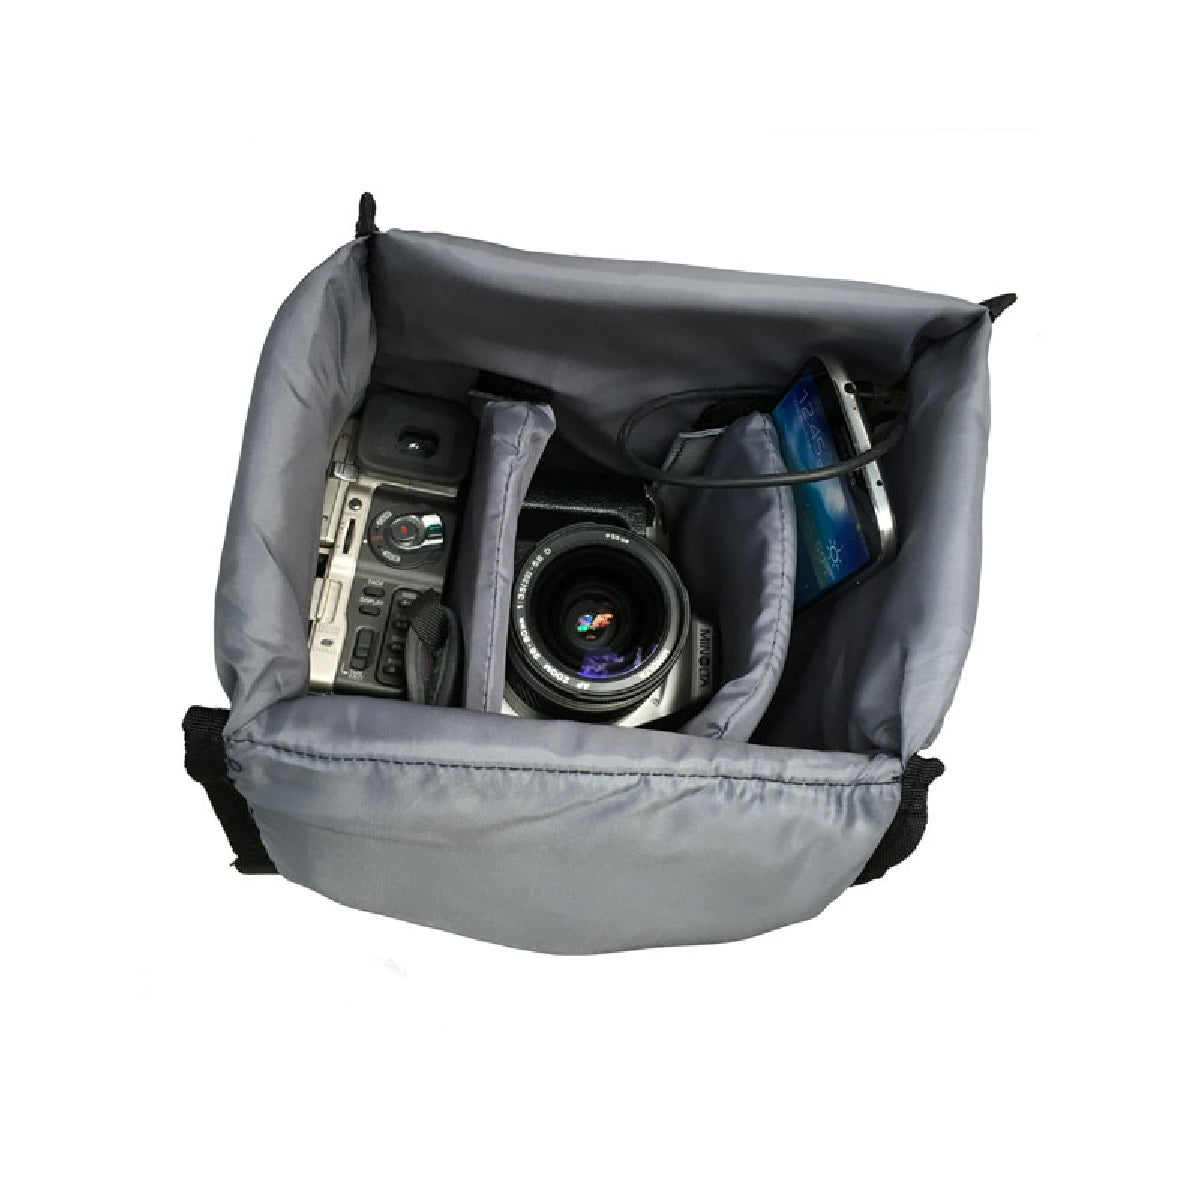 DSLR Camera Bag - Vintage Look Brown Faux Leather | camerabagpros